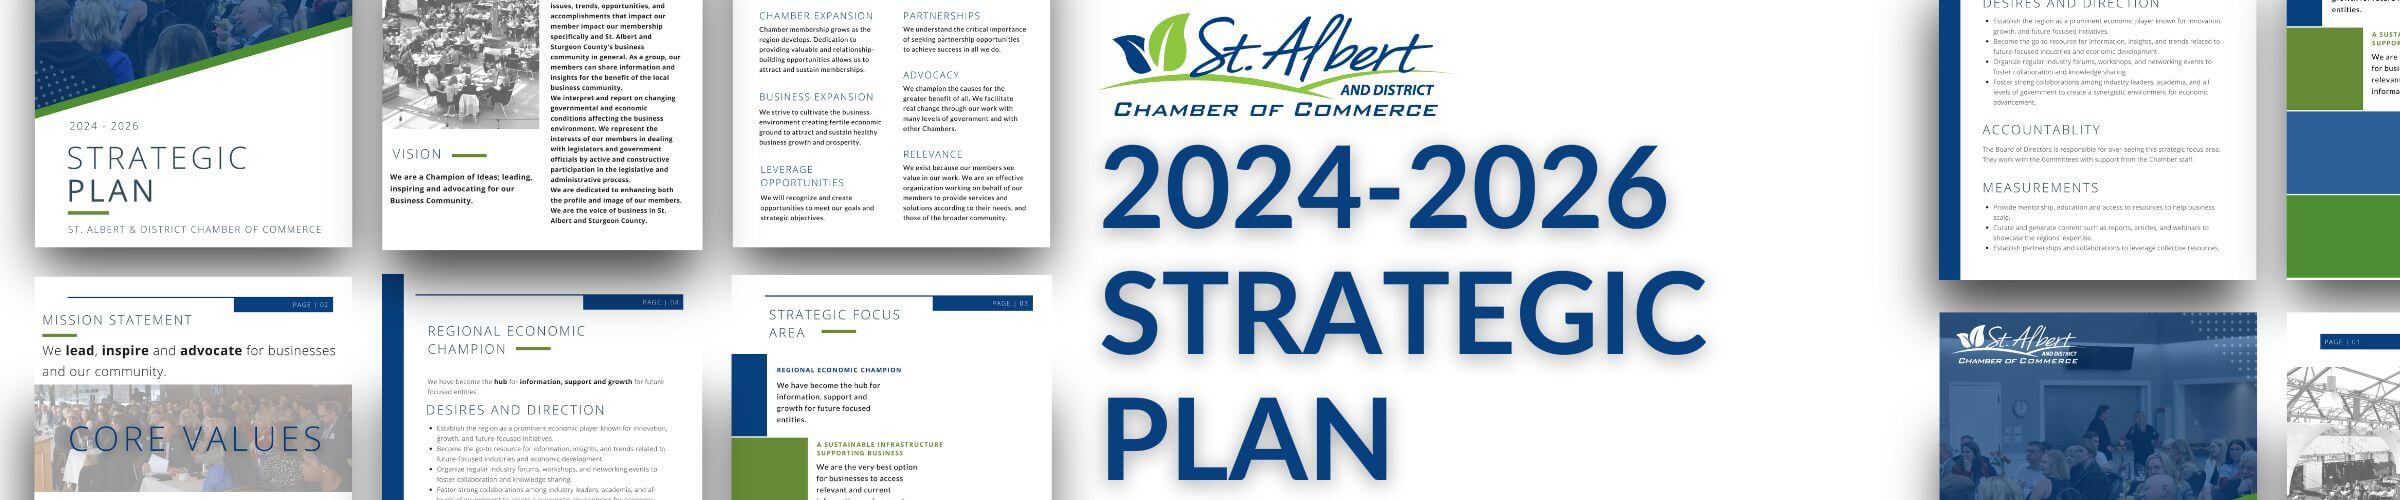 Strat plan 2024-2026